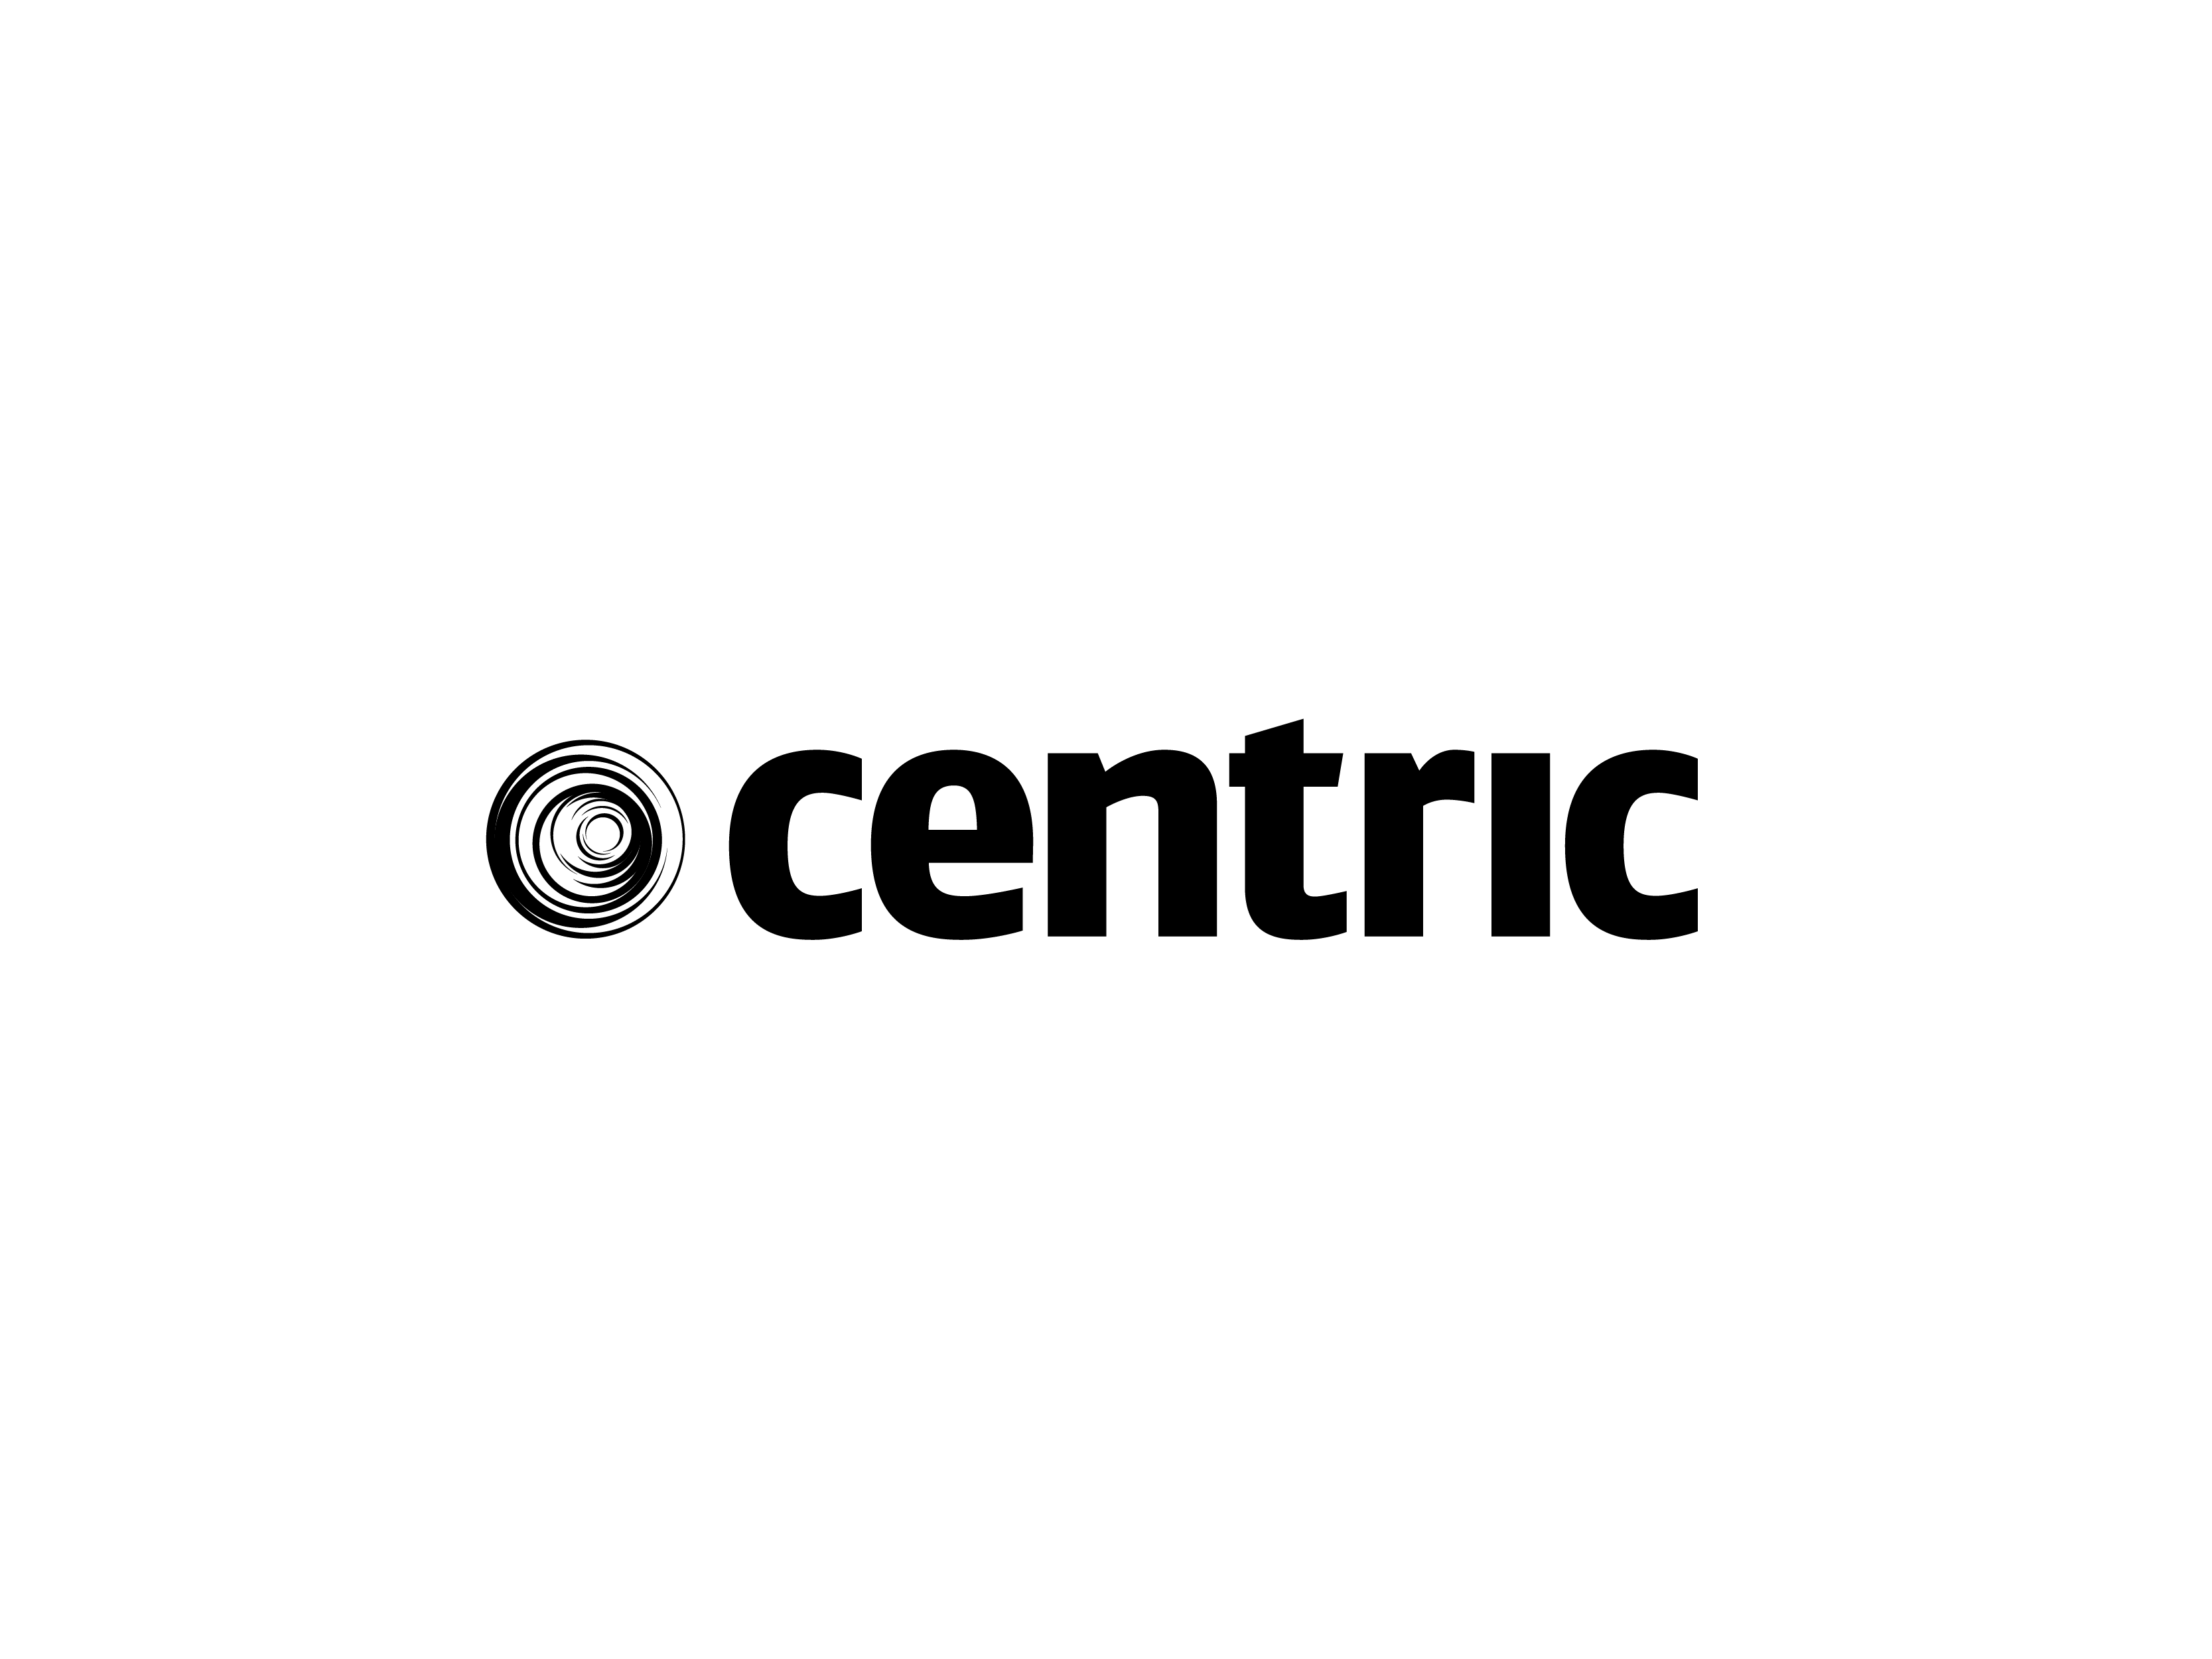 Centric (Innovation & Digital)